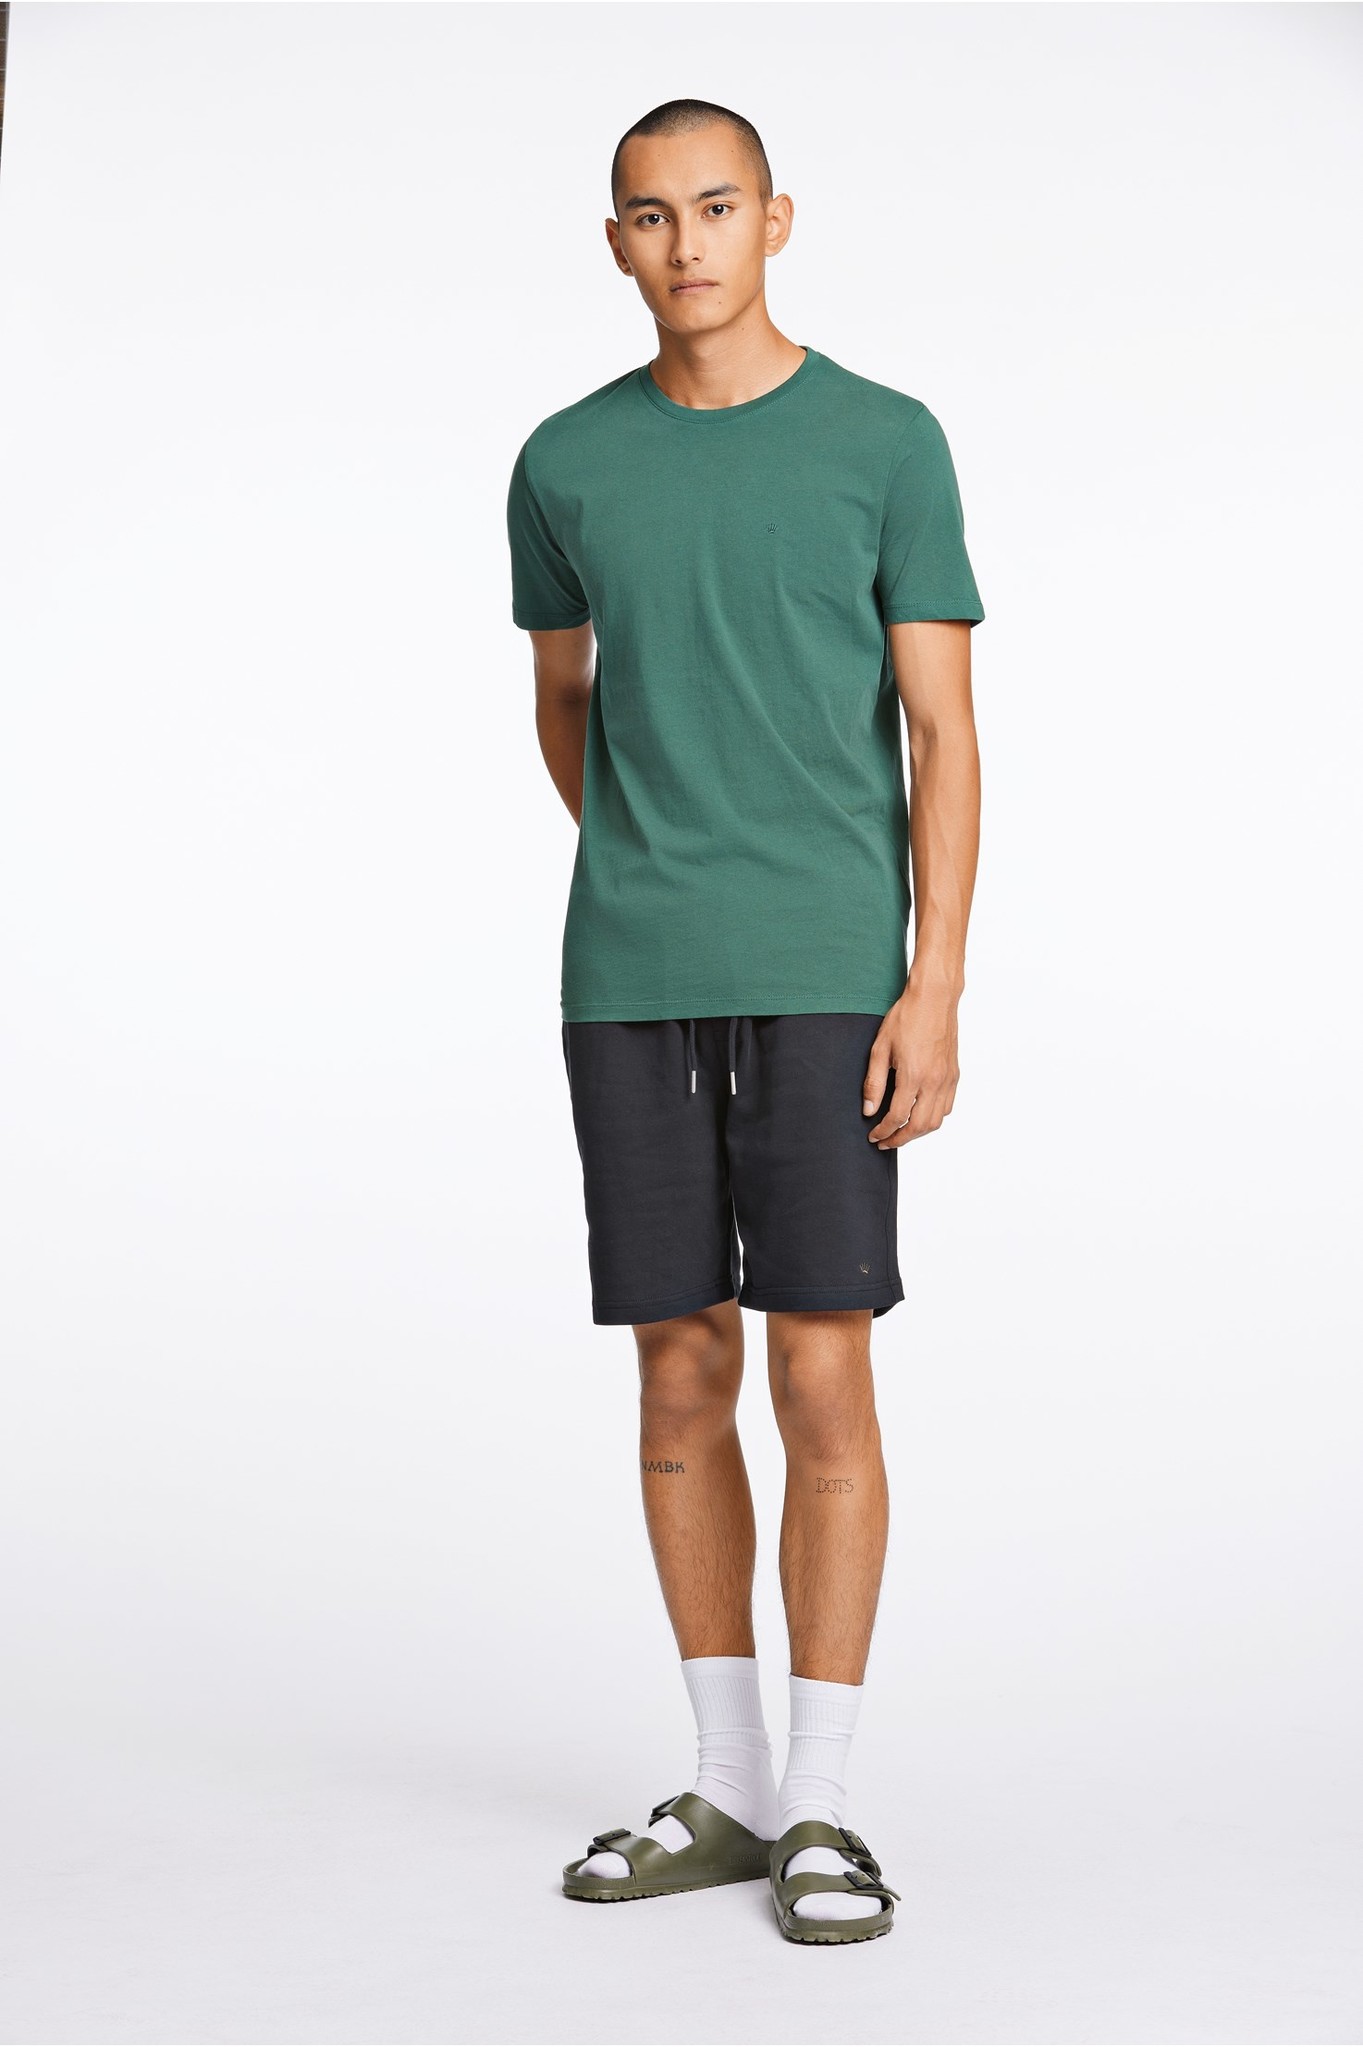 Sweat Shorts Style: 60-532002US - LINDBERGH